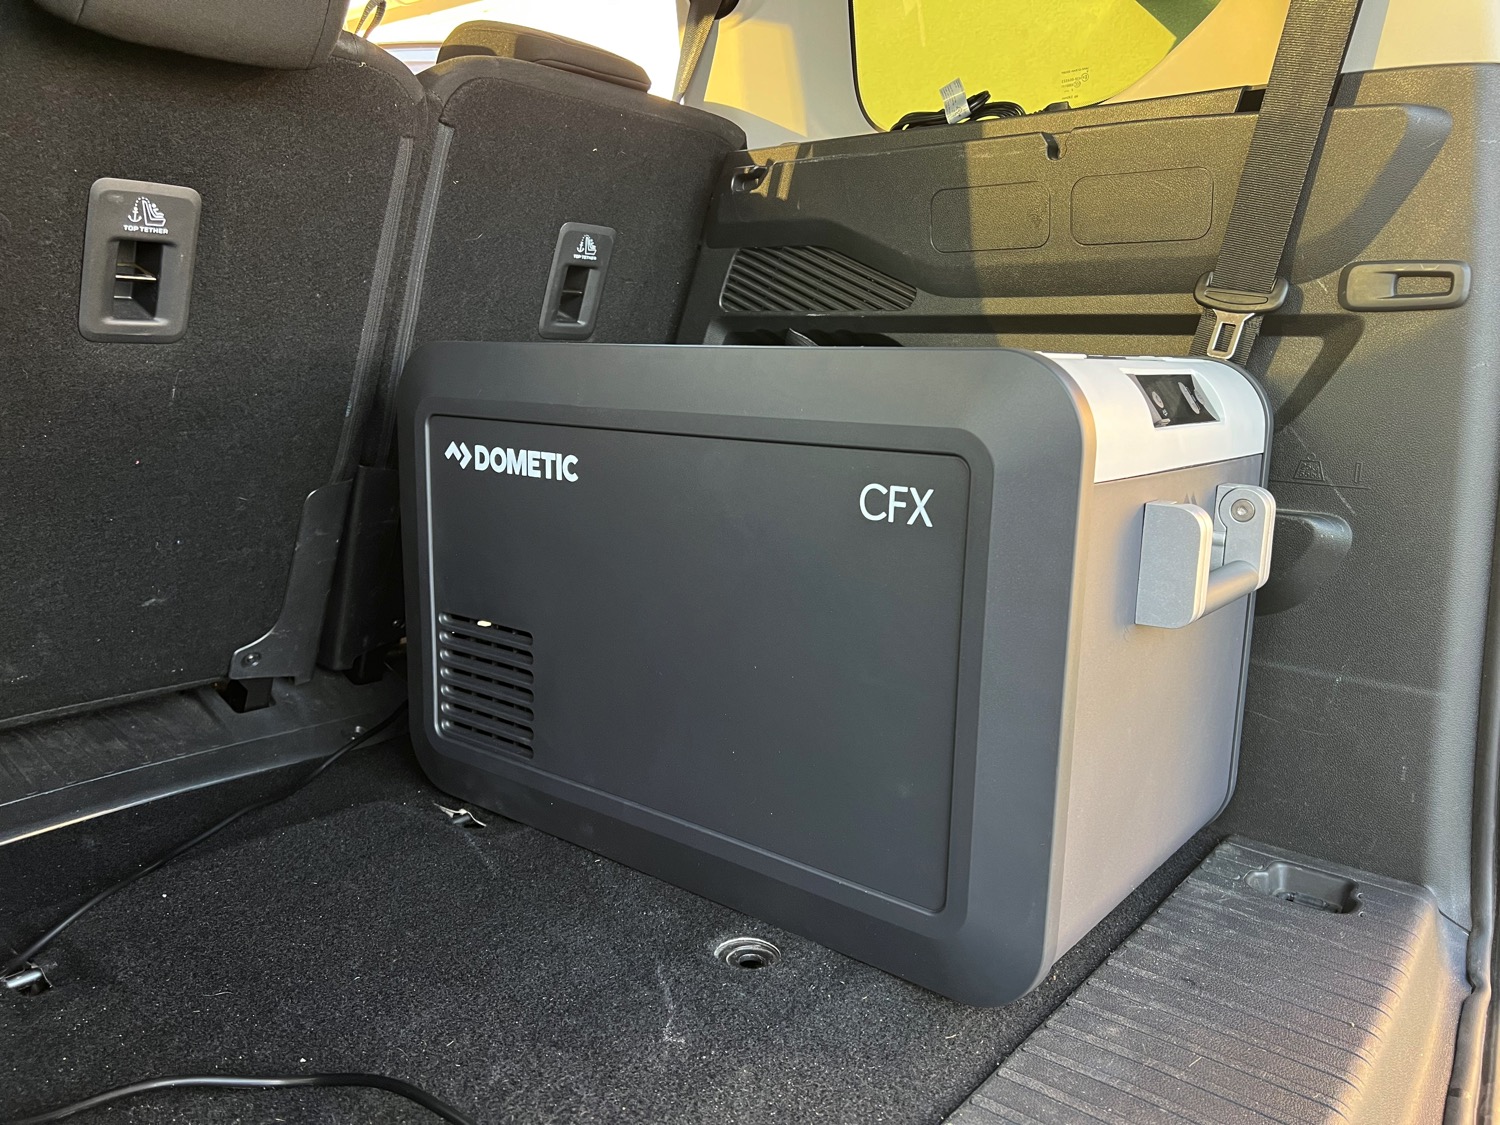 Dometic CFX3 35 ausprobiert: Mobile Kühlboxe mit App-Steuerung ›